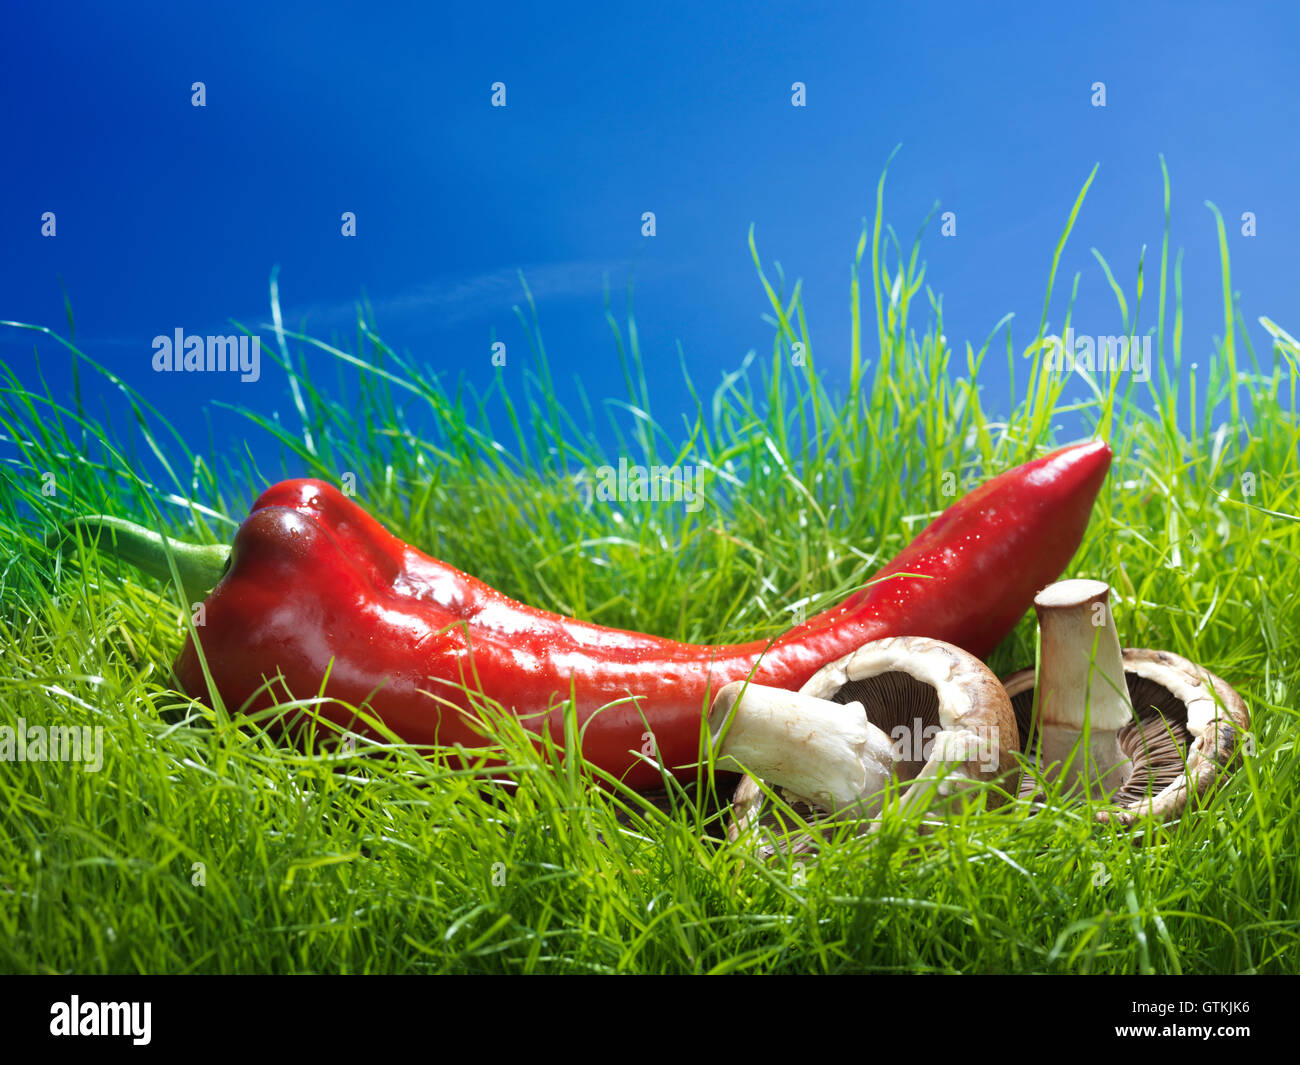 Mucho Pimiento dulce italiano Marconi y setas vremini rojo sobre verde hierba bajo un cielo azul comida artística bodegón Foto de stock